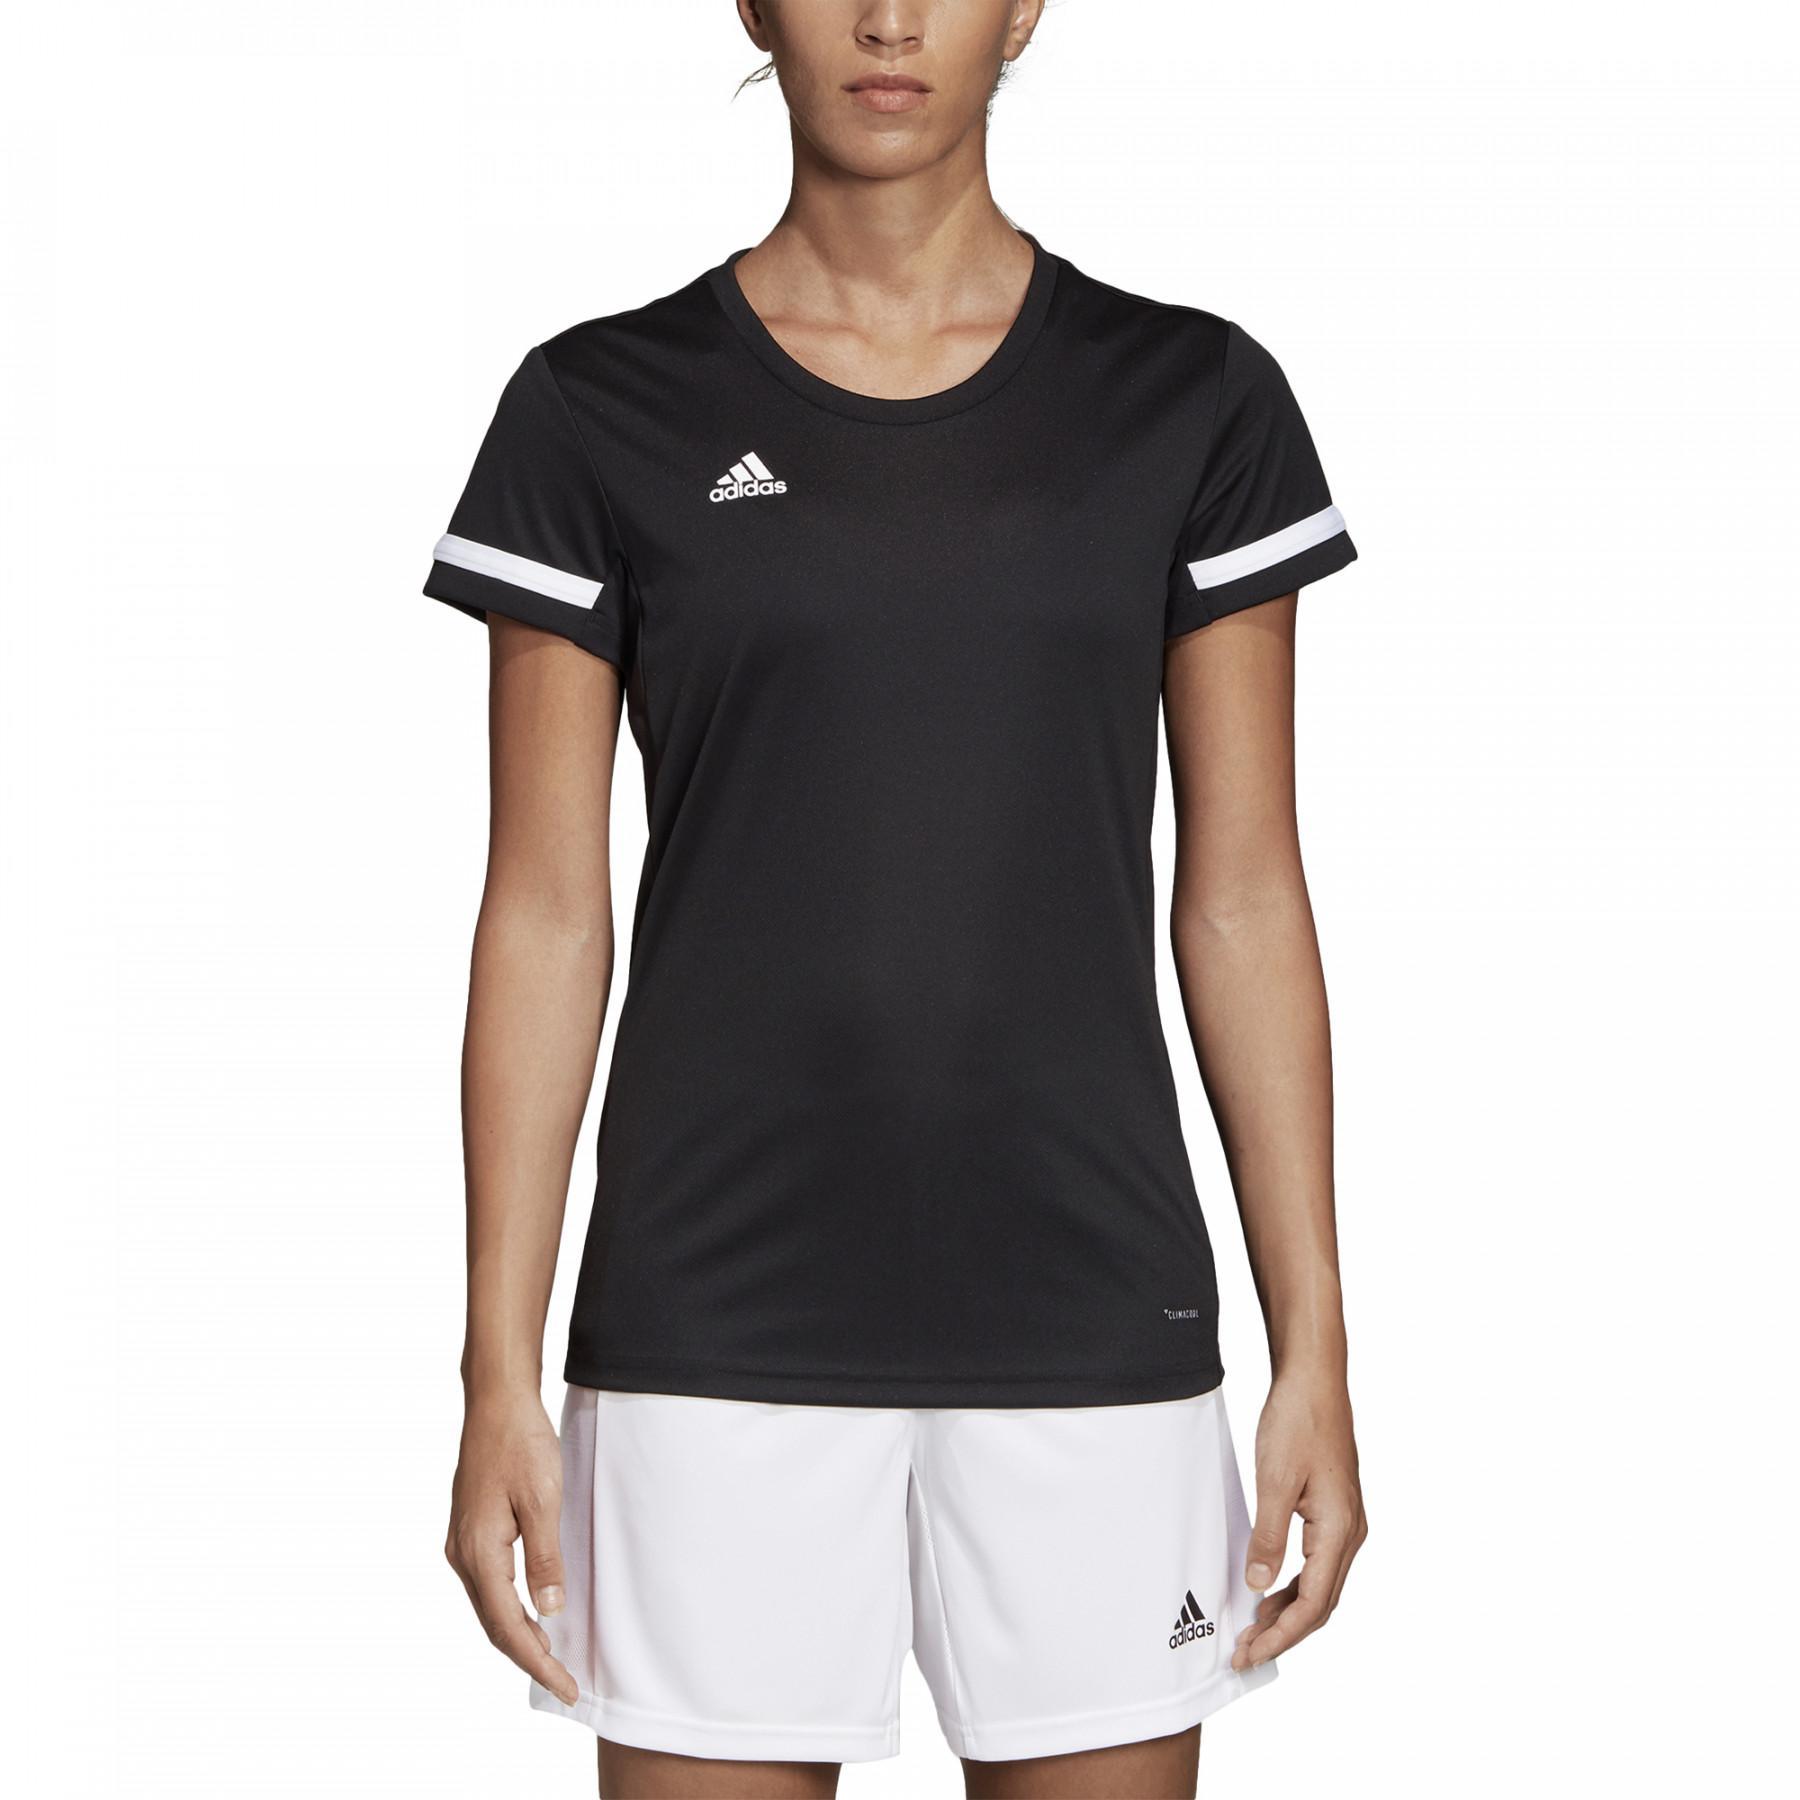 hebben Jasje erts Women's jersey adidas Team 19 - Teamwear - Football